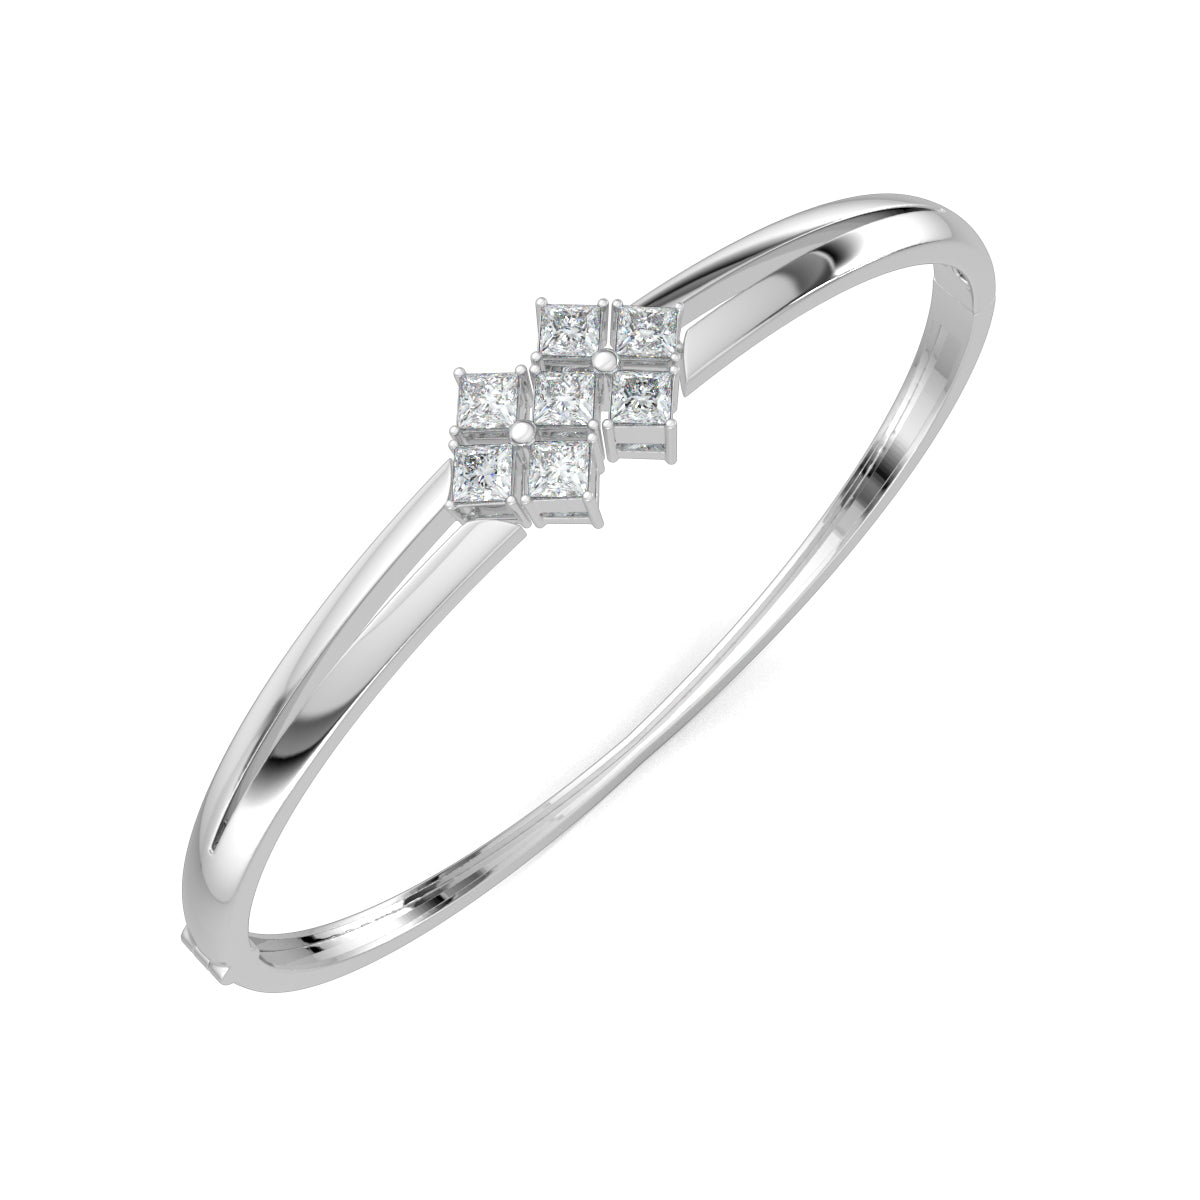 White Gold, Diamond Bracelet, Natural diamond bracelet, Lab-grown diamond bracelet, Princess cut diamond bracelet, Oval bracelet, Diamond jewelry, Luxury bracelet, Statement bracelet, Fashion accessory.